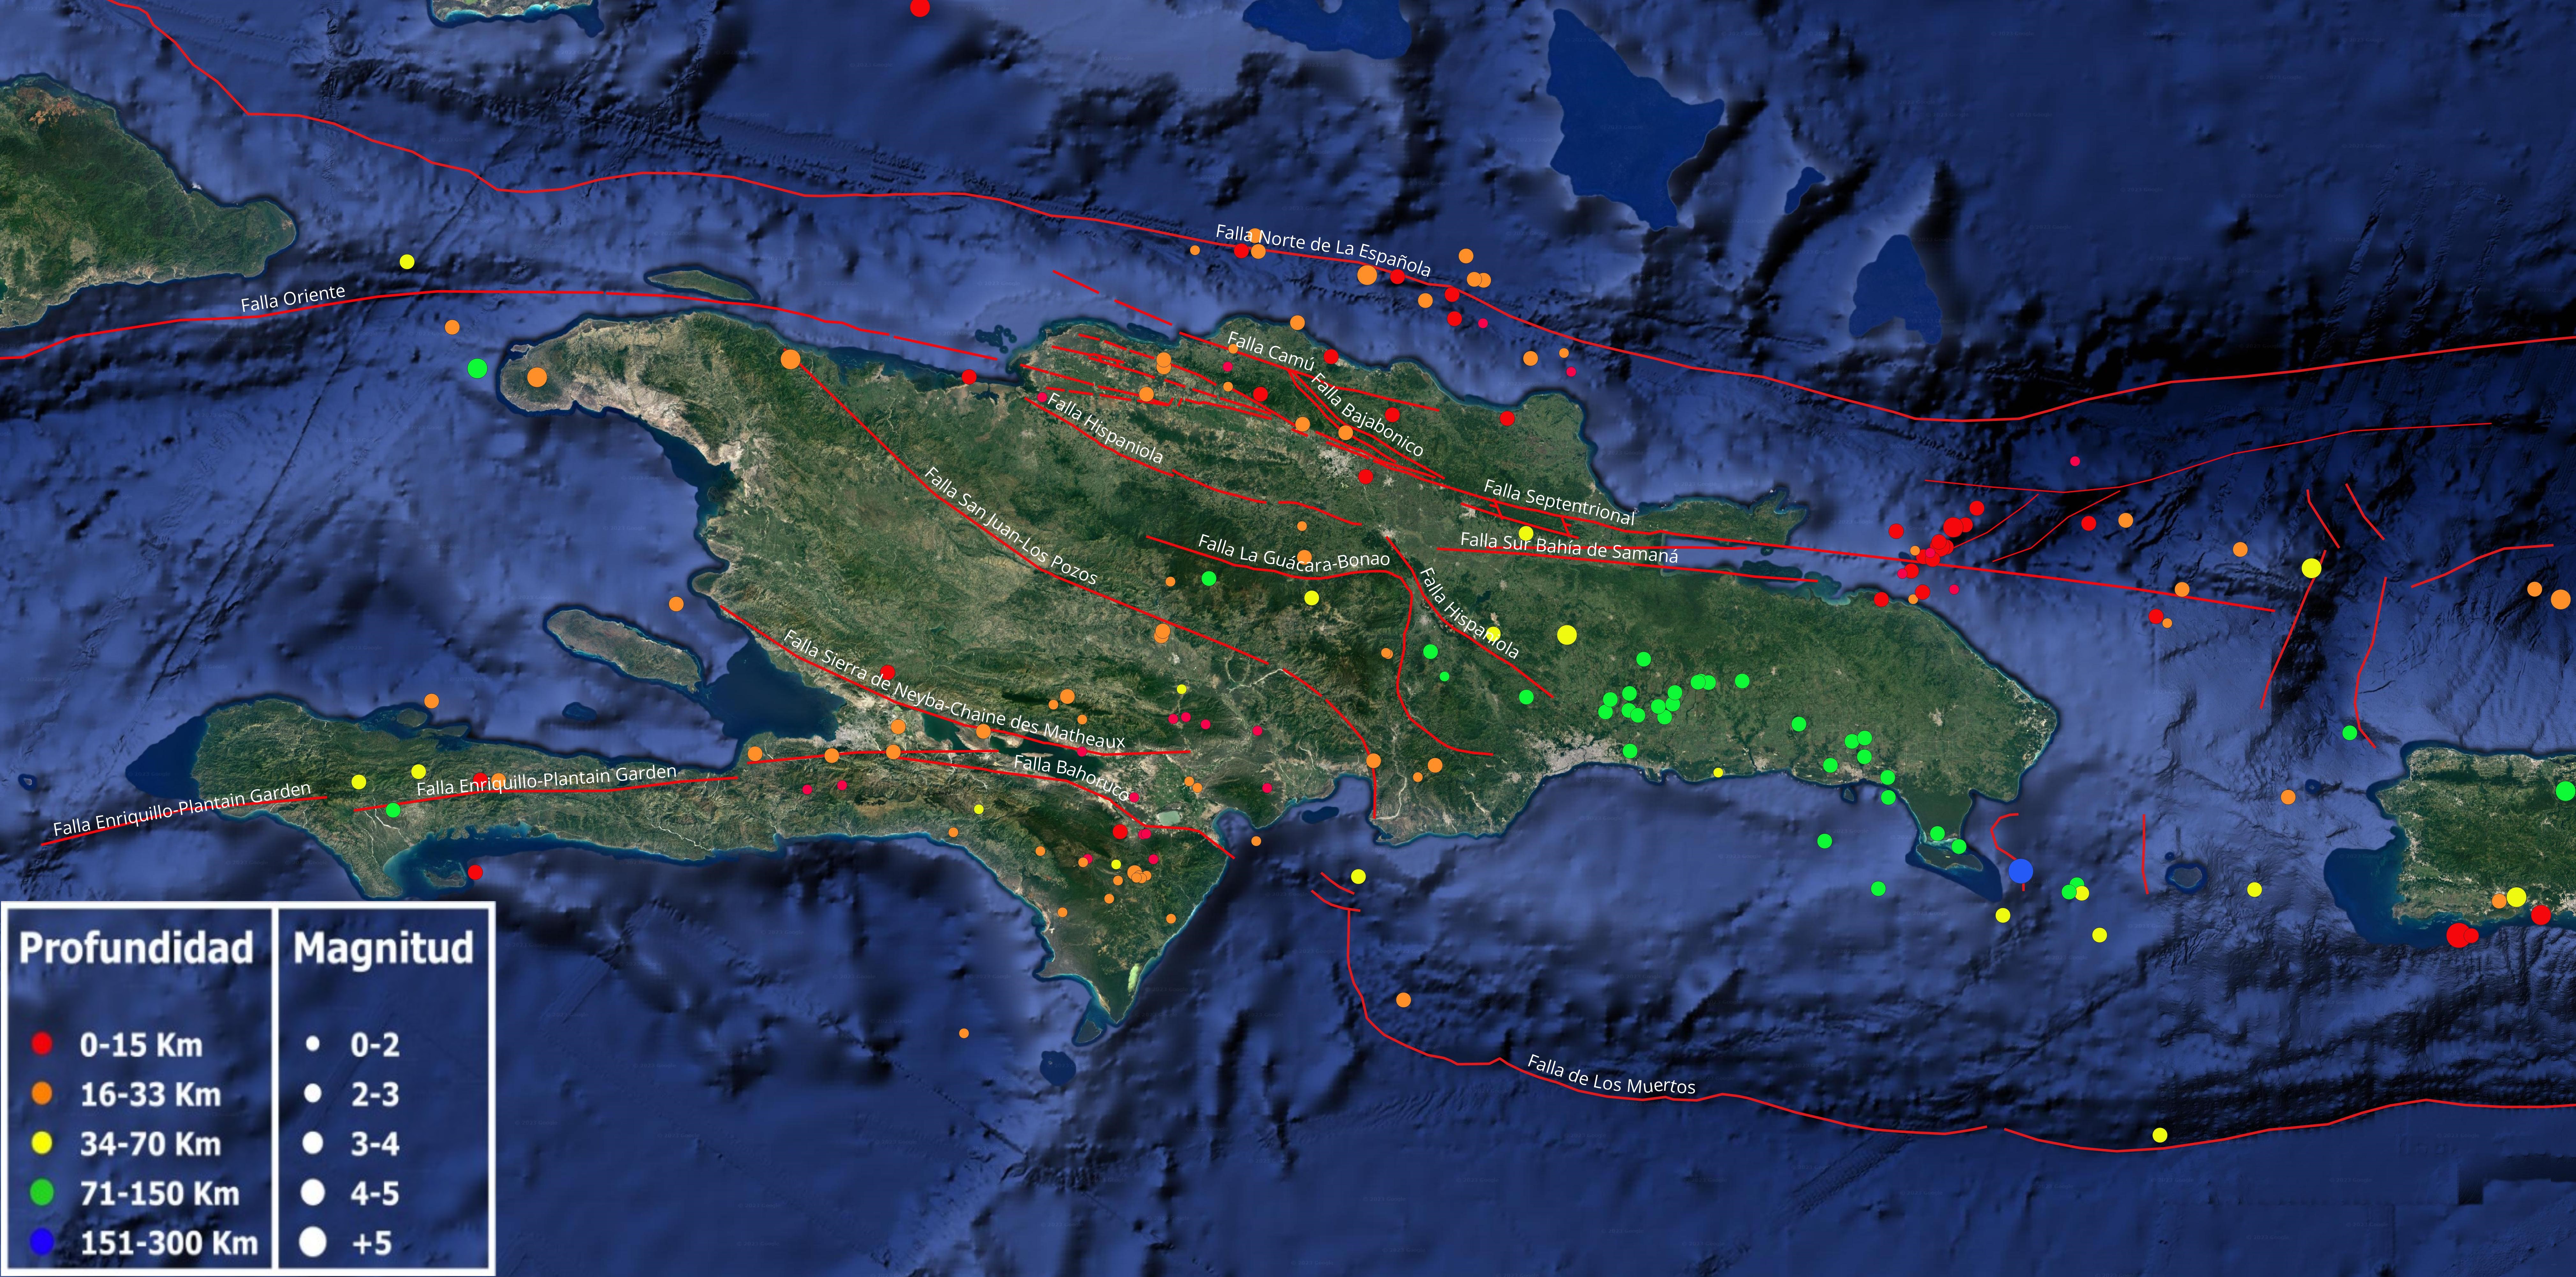 Figura 1: Mapa cortesía de Google earth mostrando la sismicidad de La Isla de La Española y alrededores durante el pasado mes de enero 2024. Los lineamientos en rojo indican las principales fallas geológicas compiladas por diferentes autores calificados.